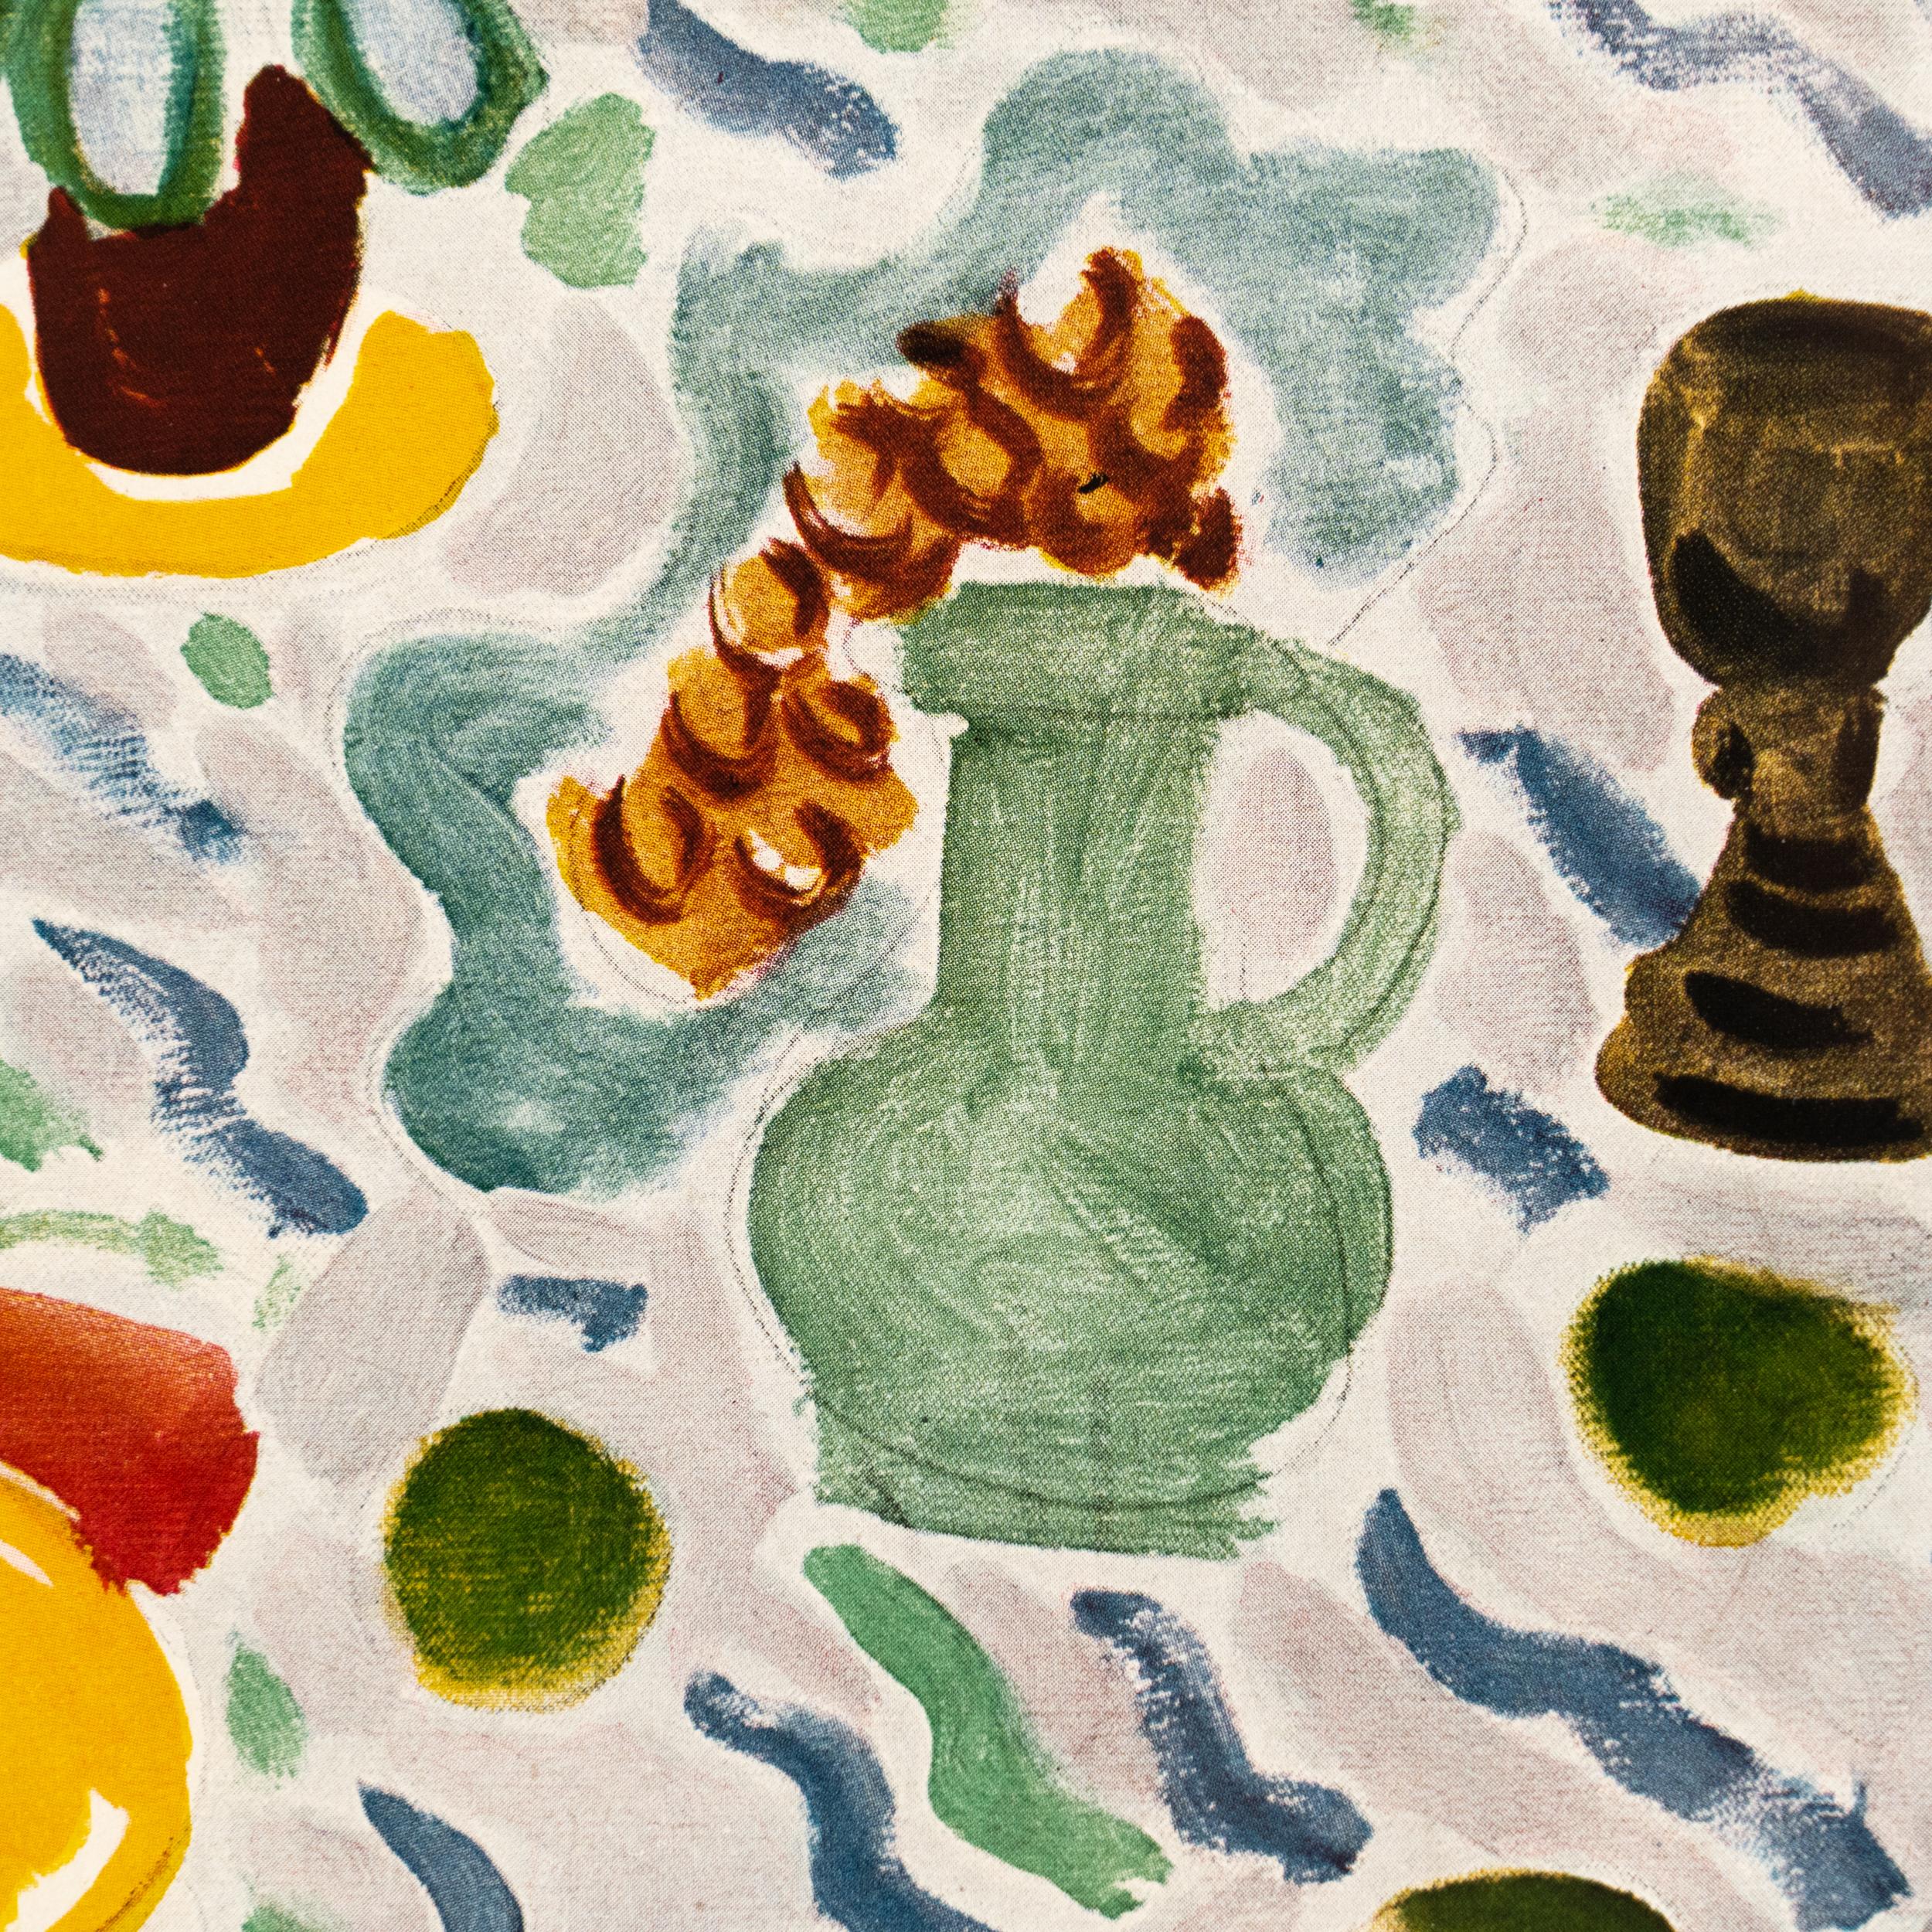 Rare Color Lithograph: A Glimpse into Matisse's Artistic Mastery For Sale 5